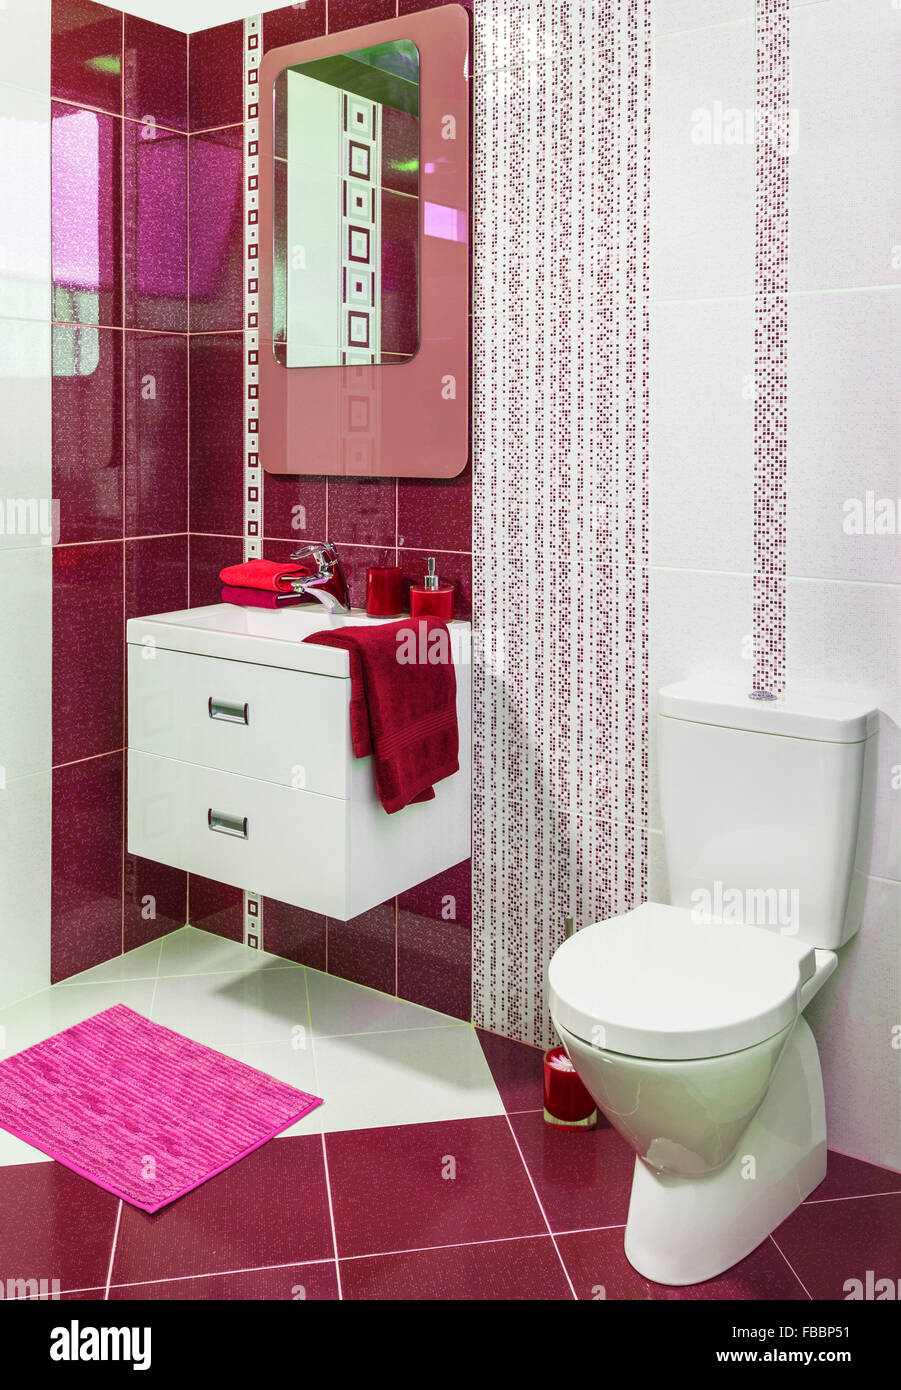 Décorées dans un style moderne de luxe toilettes avec des tuiles rouges Banque D'Images